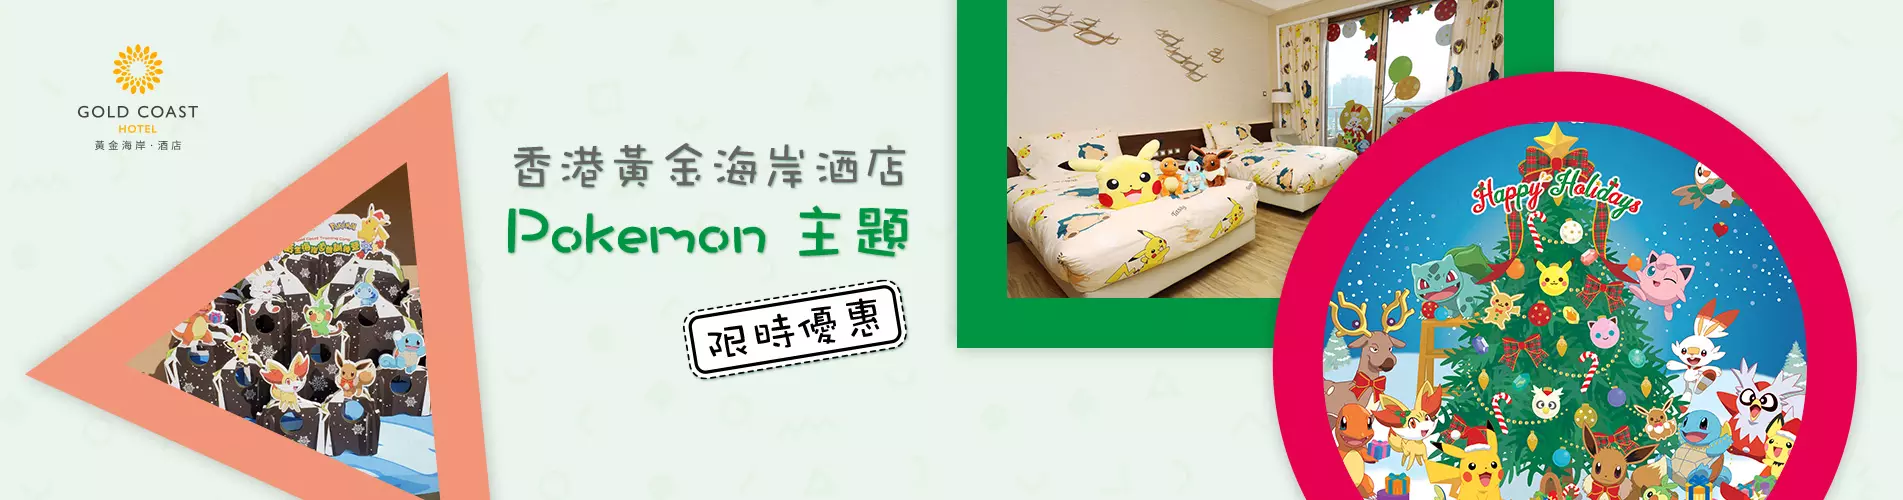 香港黃金海岸酒店「Pokémon 道館訓練員聖誕住宿計劃」